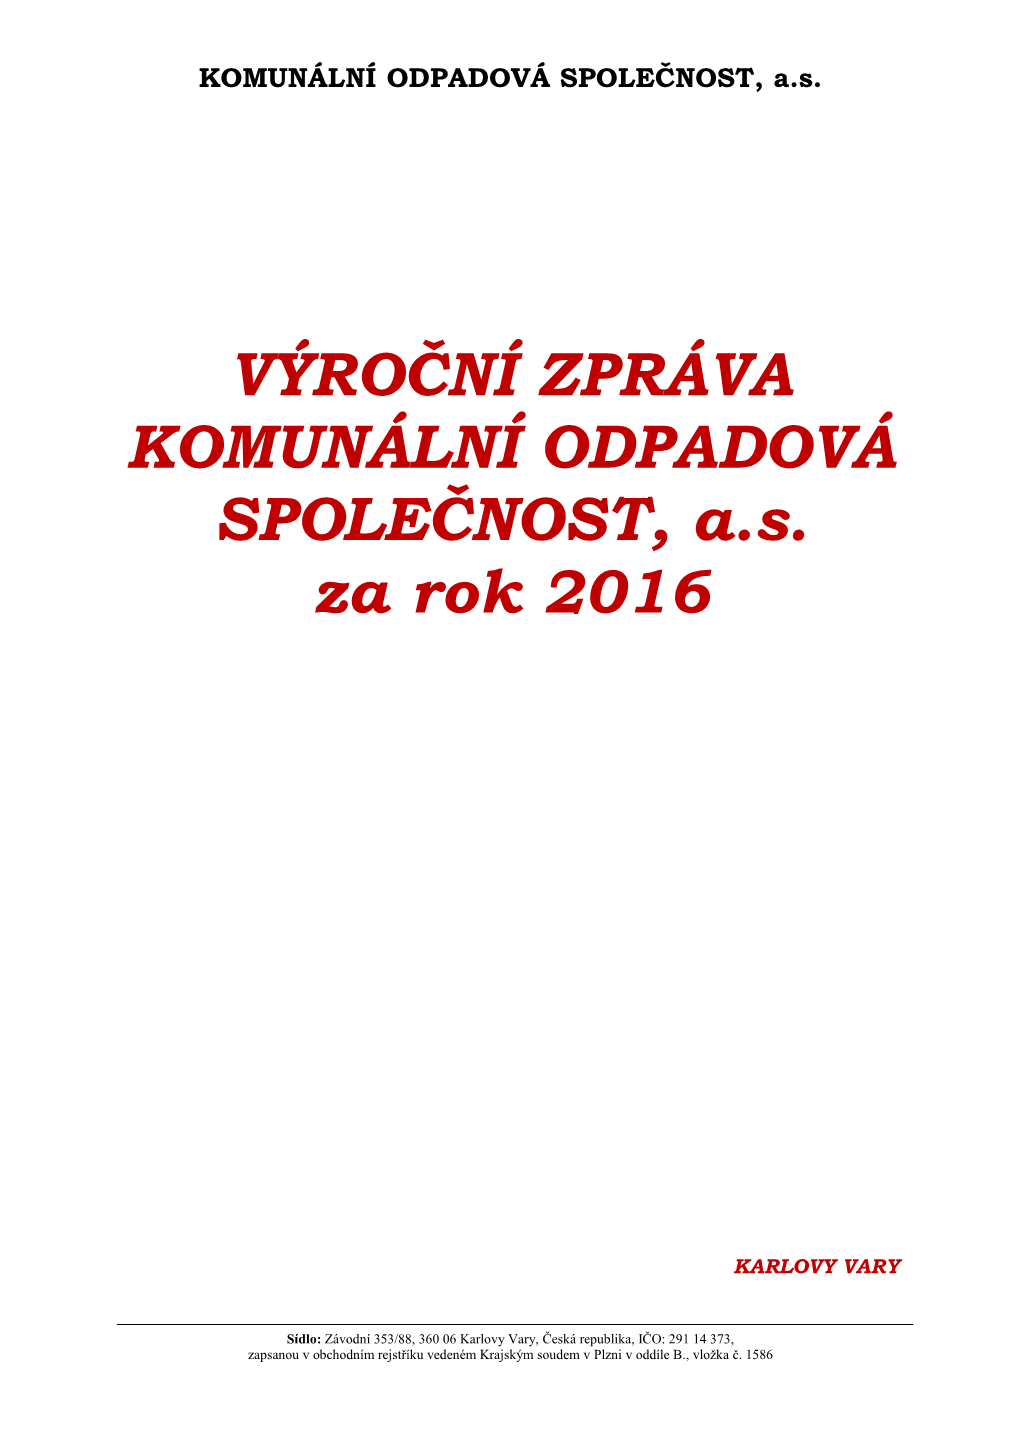 Výroční Zpráva Společnosti KOS, A.S. 2016